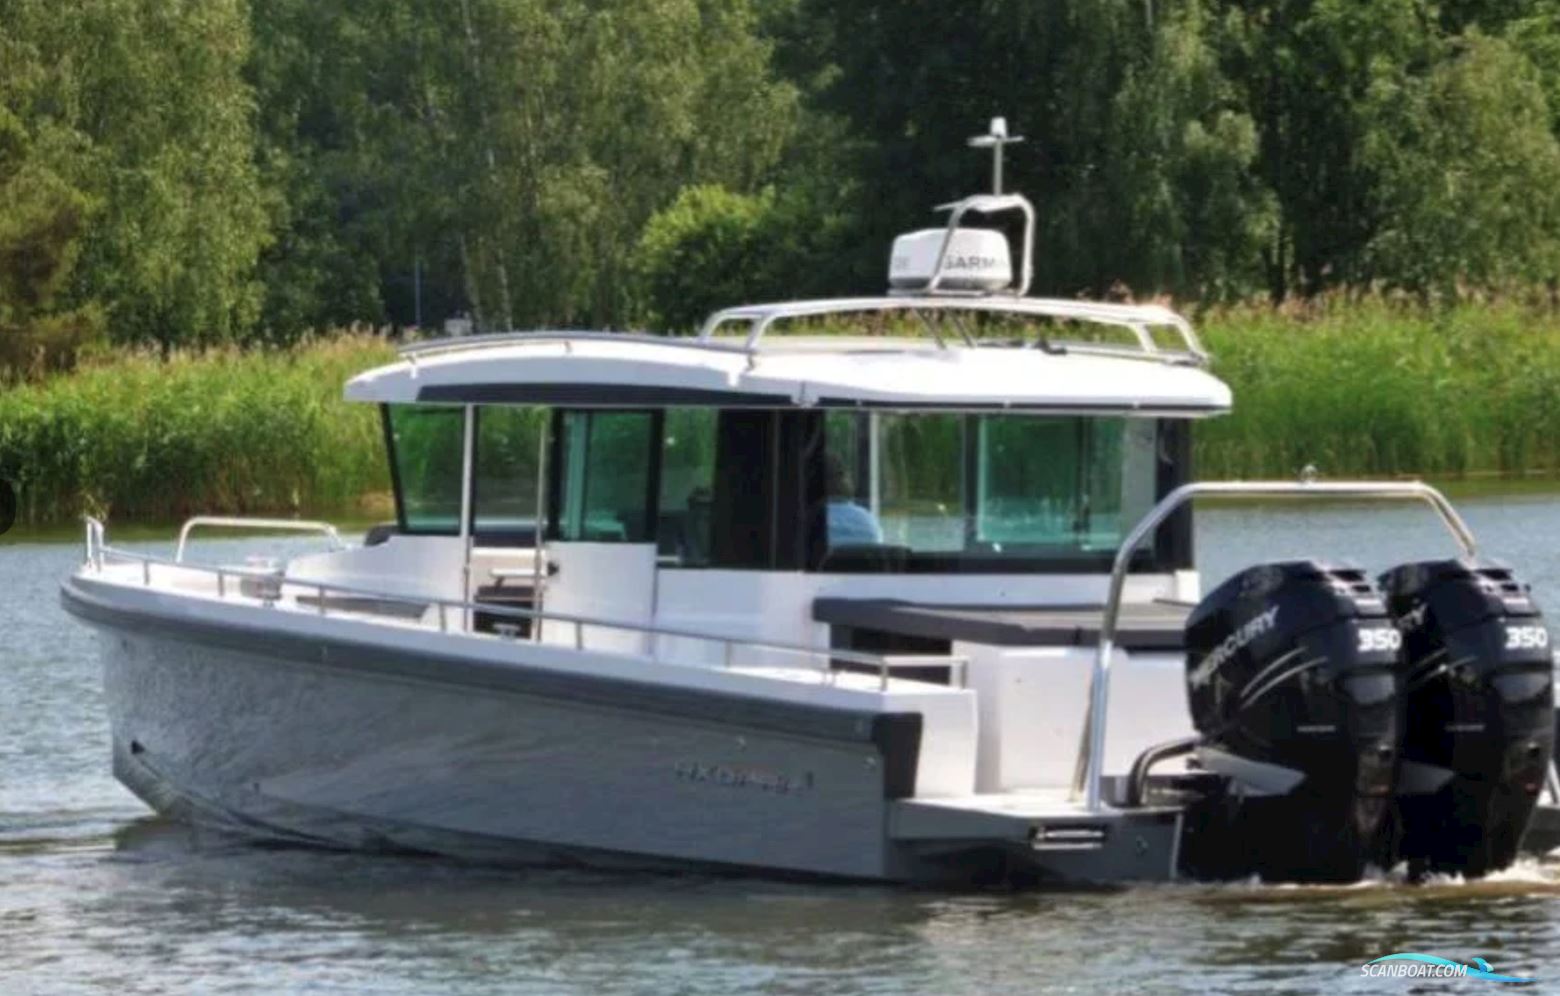 Axopar 37 Cabin Aft Cabin Motorbåt 20, med 2*Mercury 350hk motor, Sverige